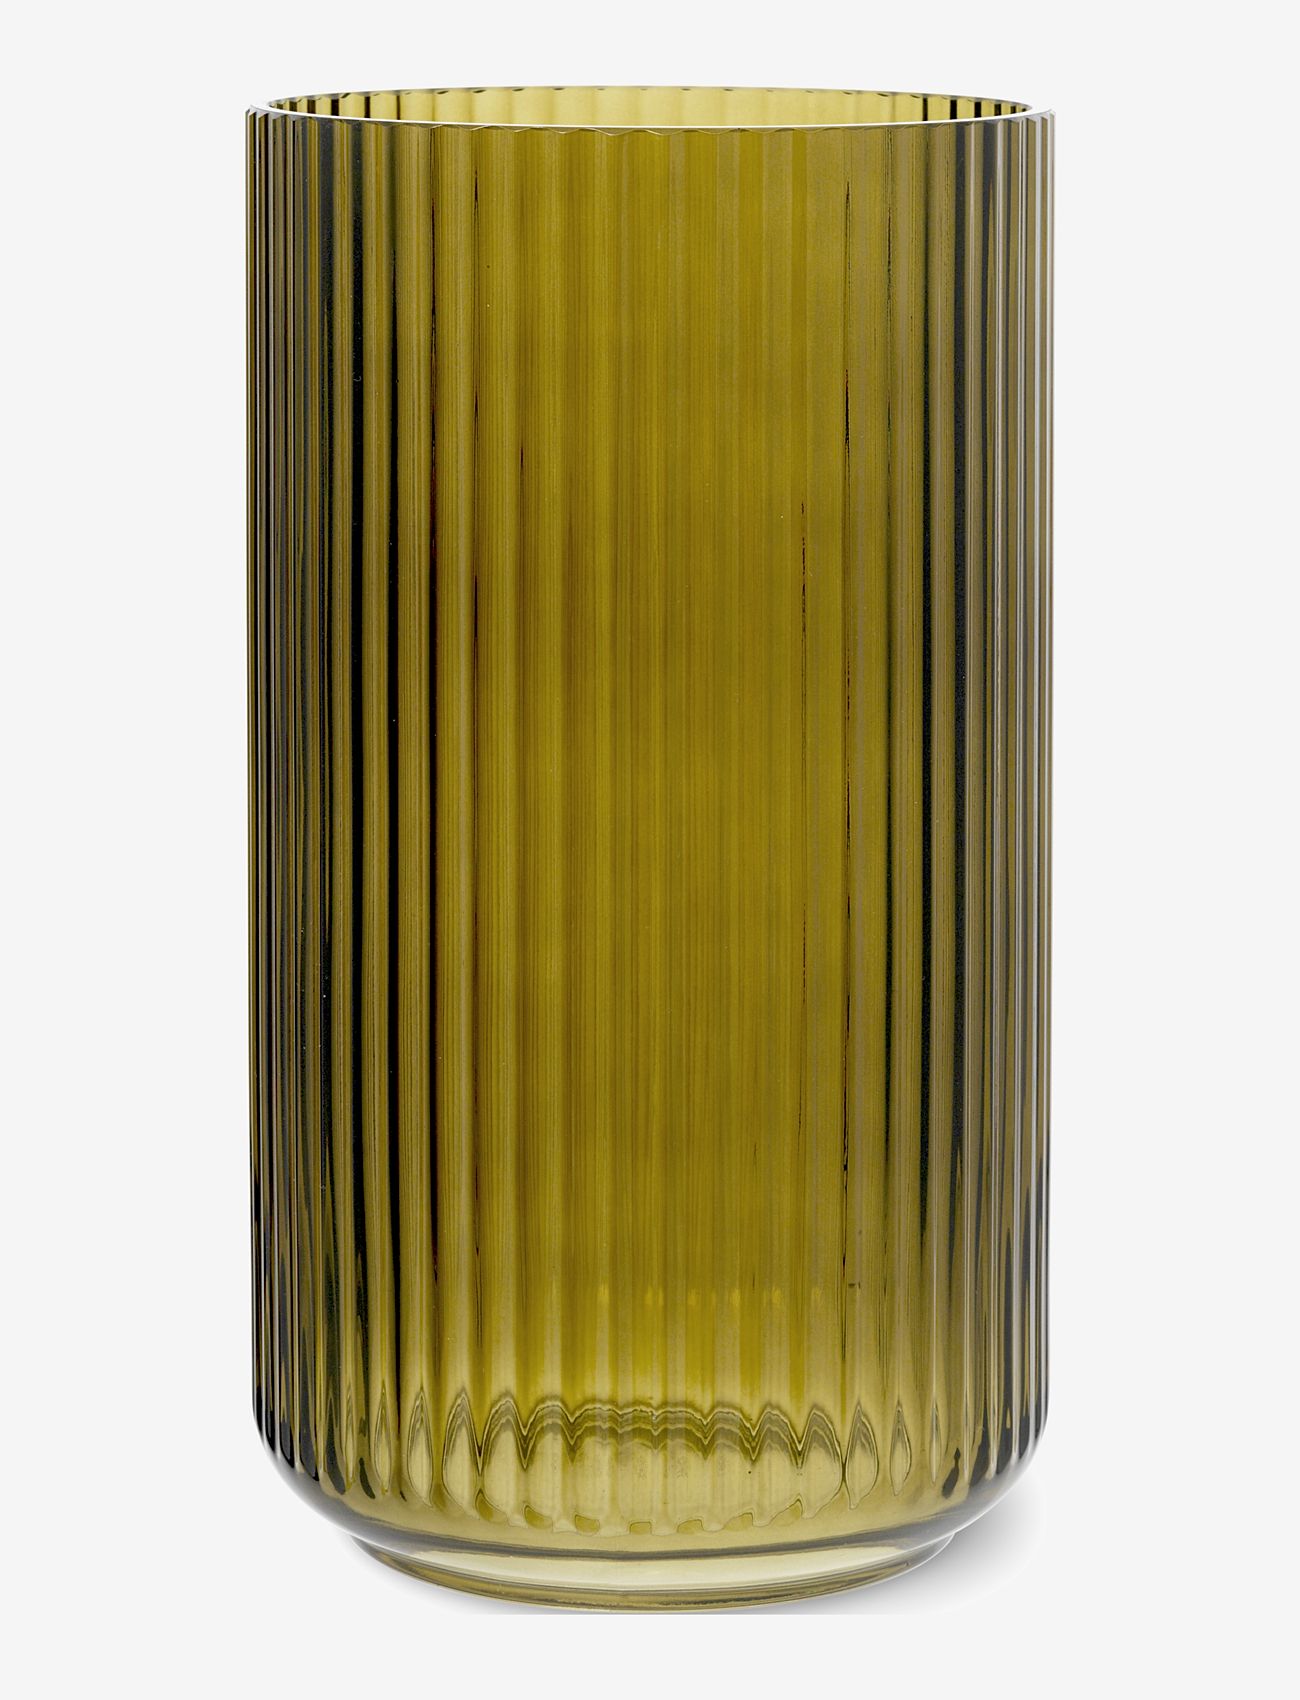 Lyngby Porcelæn - Lyngby Vase H31 cm olive green mouth blown glass - big vases - olive green - 0